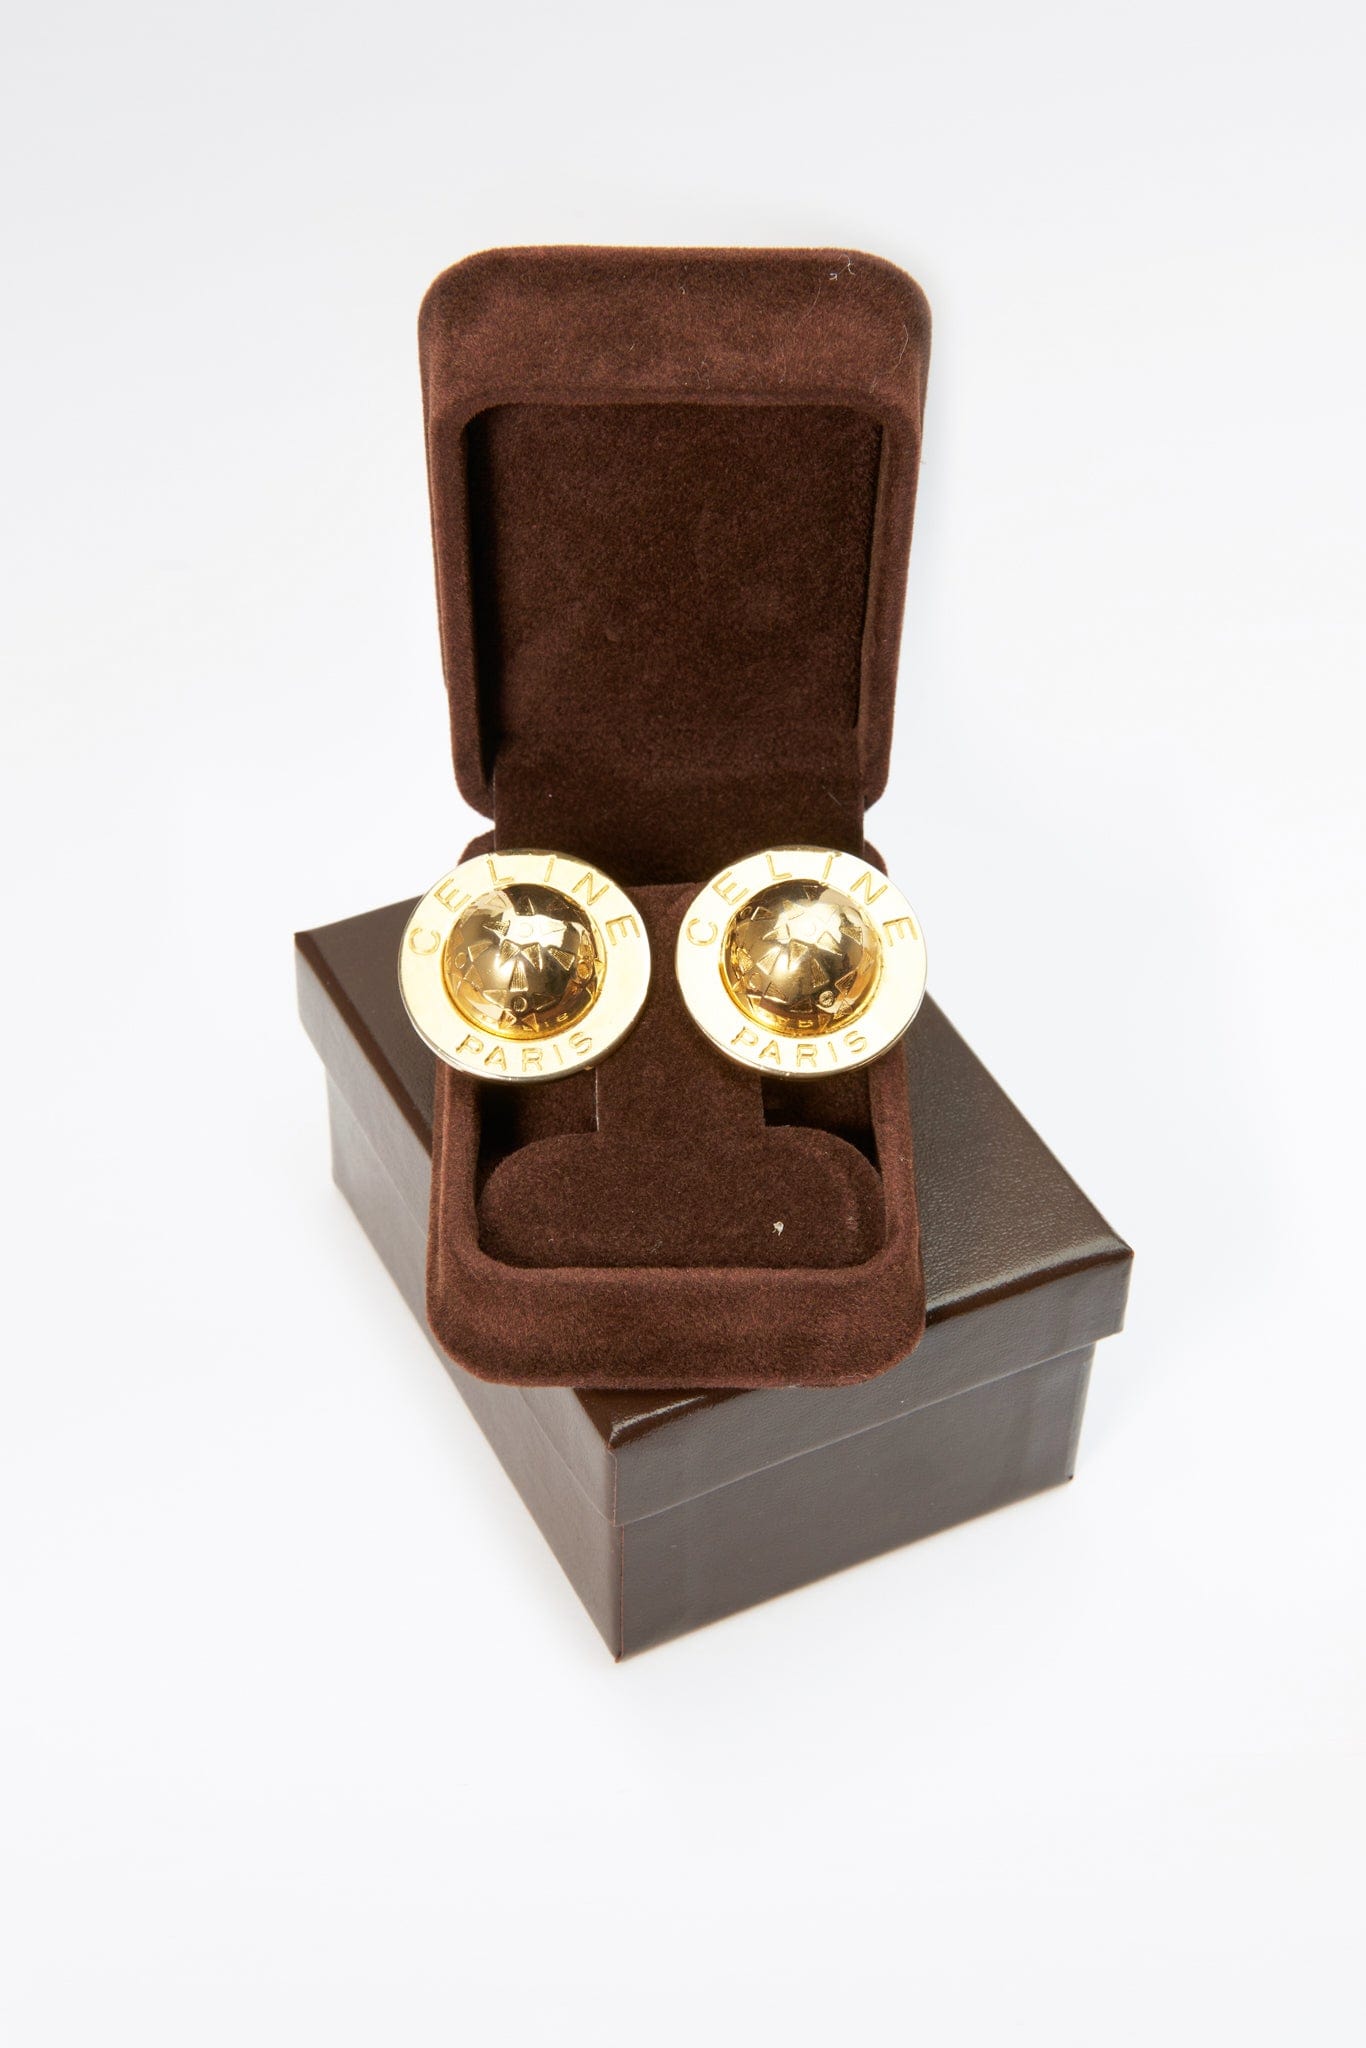 Vintage Gold Celine Ball Earrings